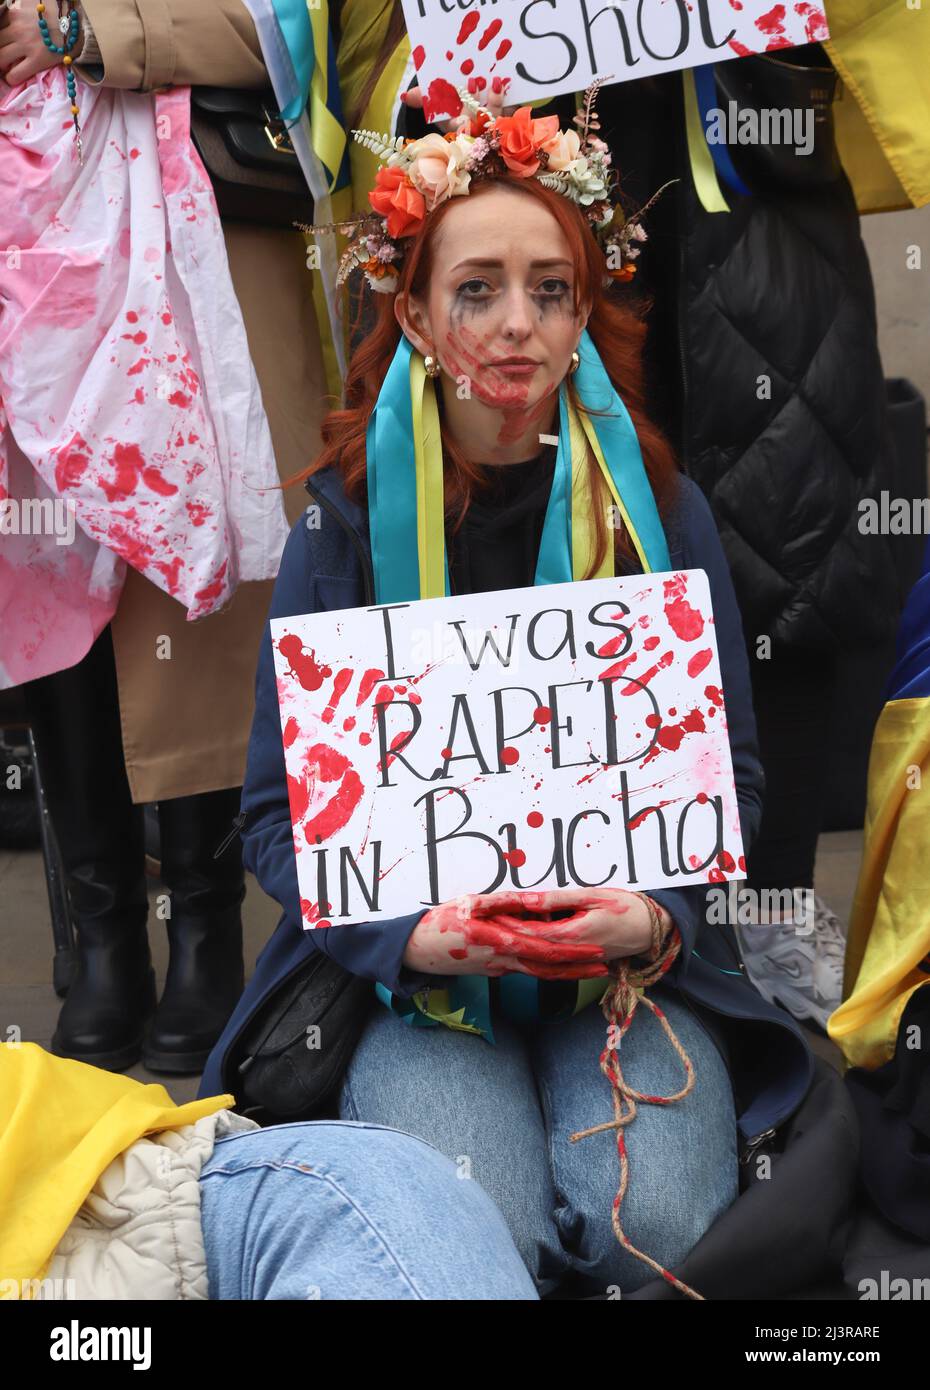 Londra, Inghilterra, Regno Unito 9 aprile 2022 Stand with Ucraina protesta e morire-in Downing Street. I manifestanti indossavano costumi tradizionali e portavano cartelli con dichiarazioni sui crimini commessi dai soldati russi e giacevano con le mani legate e incatenate. Foto Stock